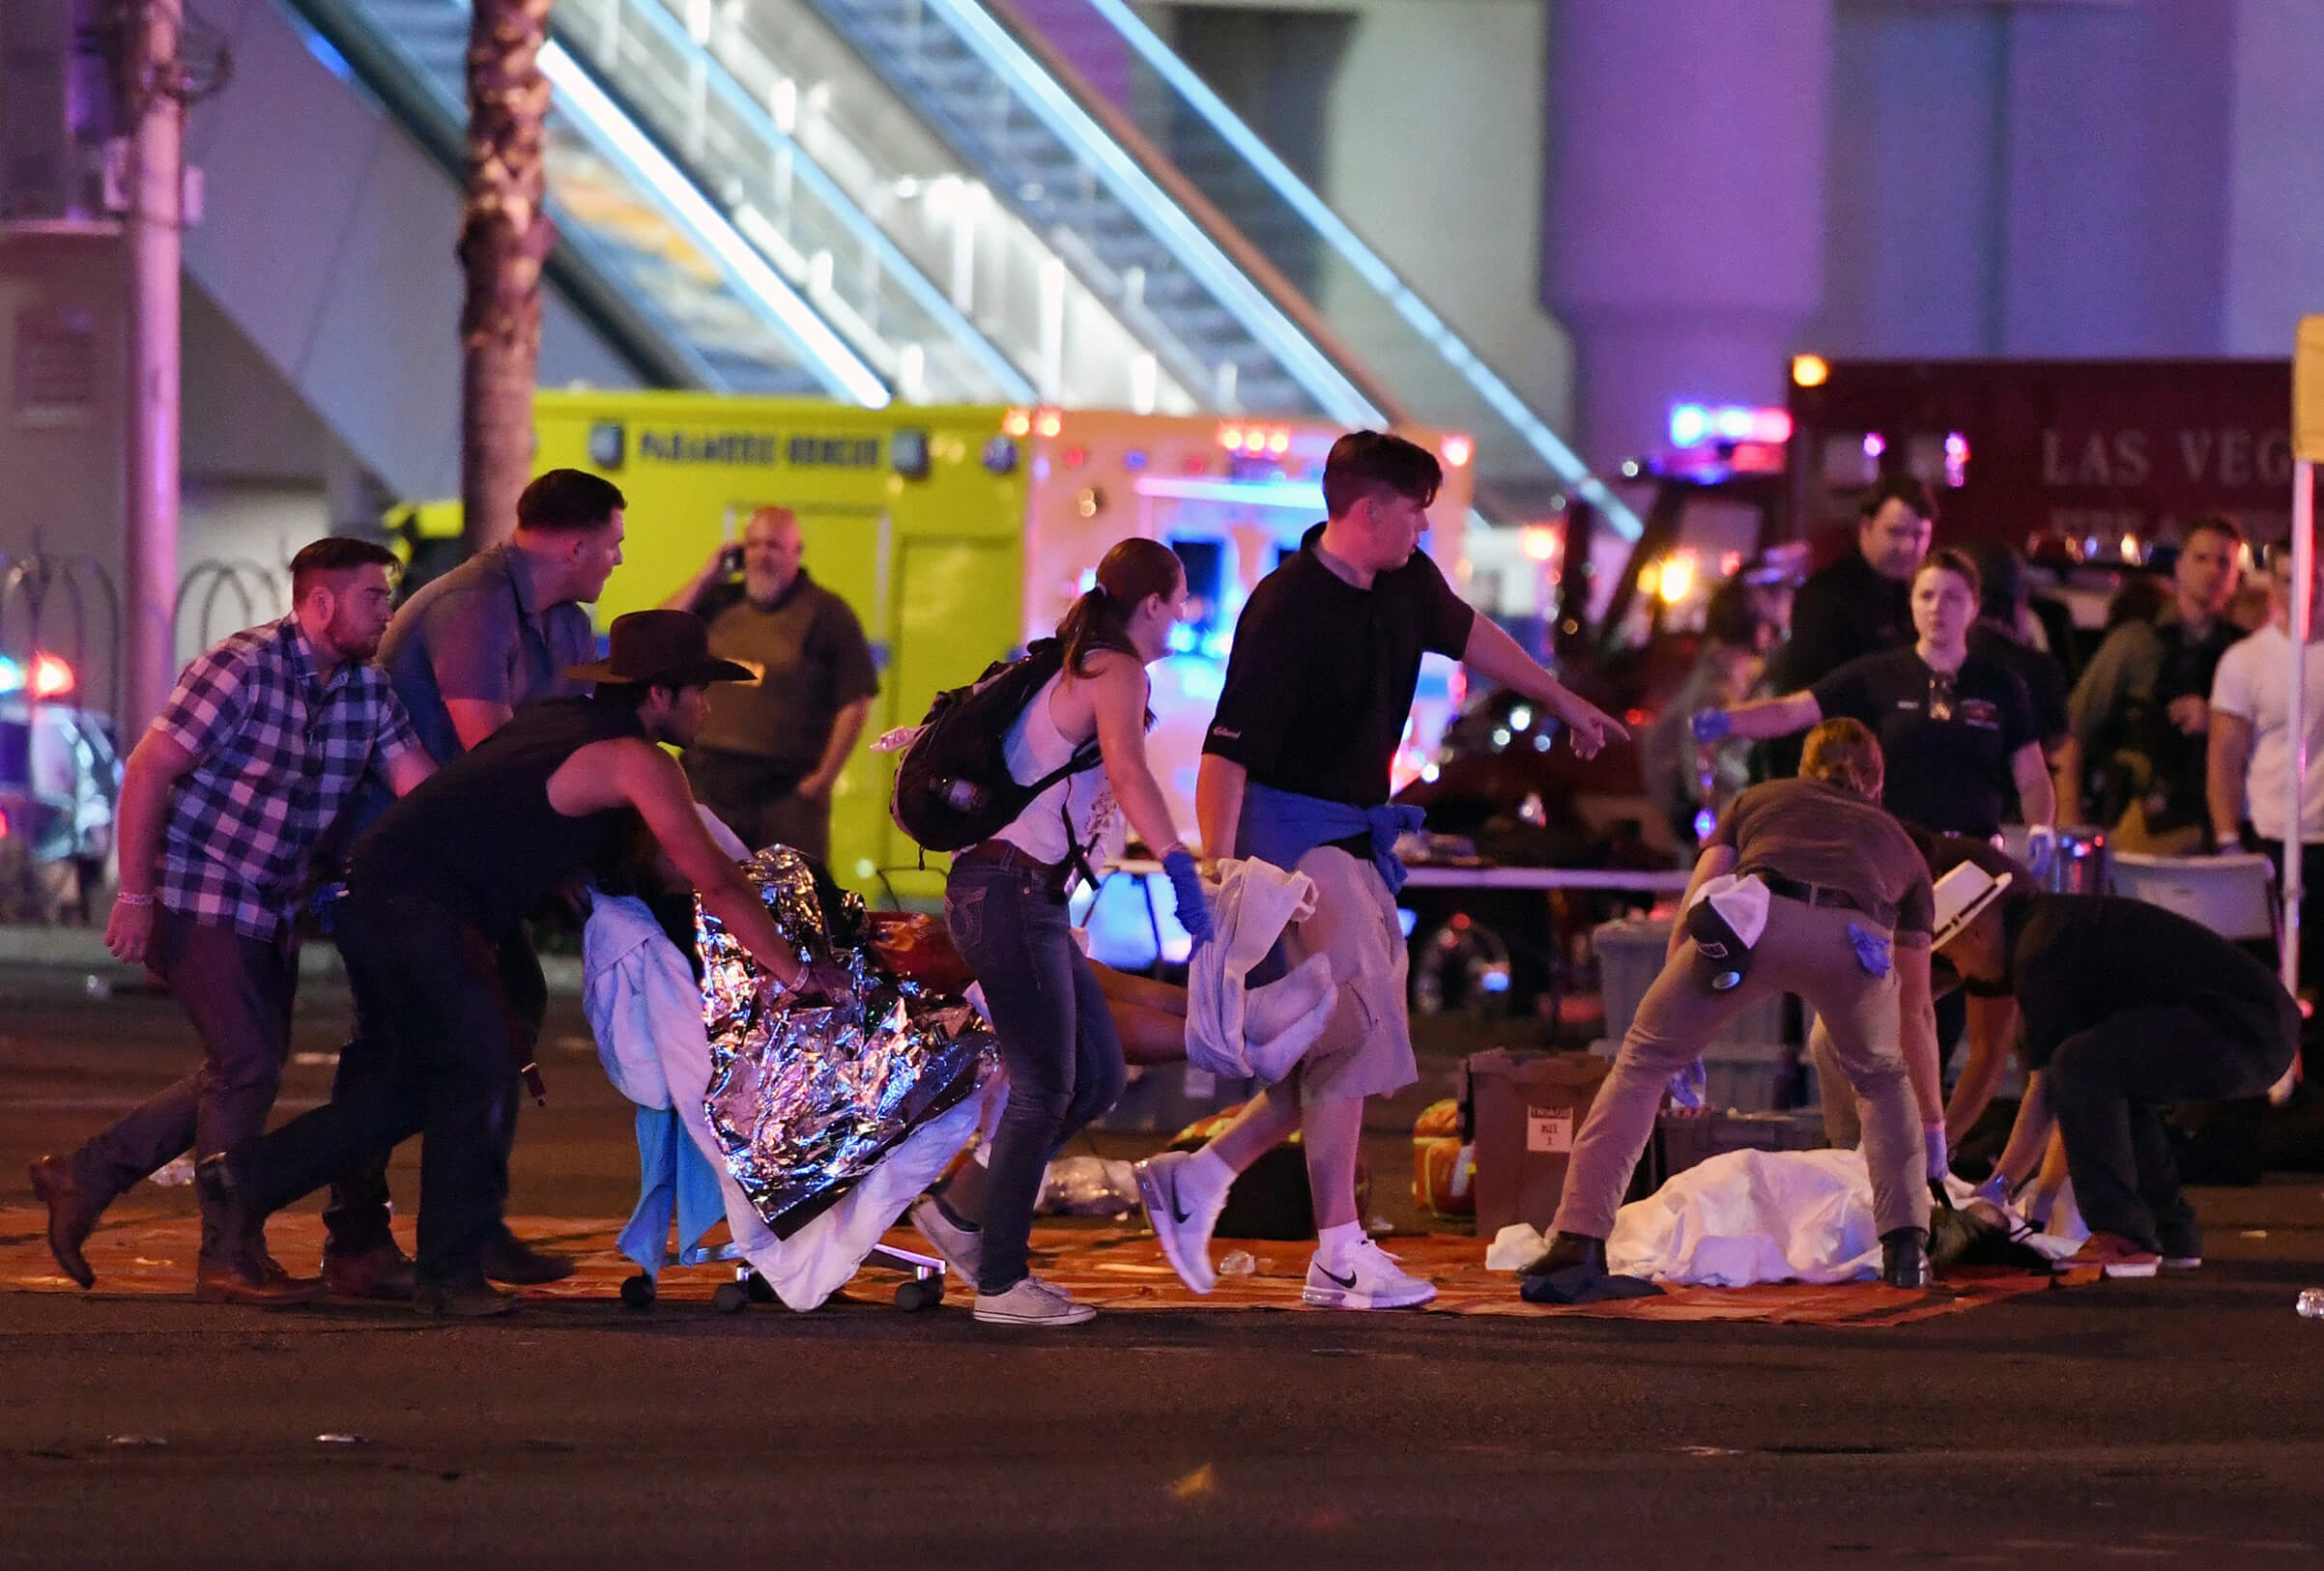 Image #04 Las Vegas Shooting Injured Victim